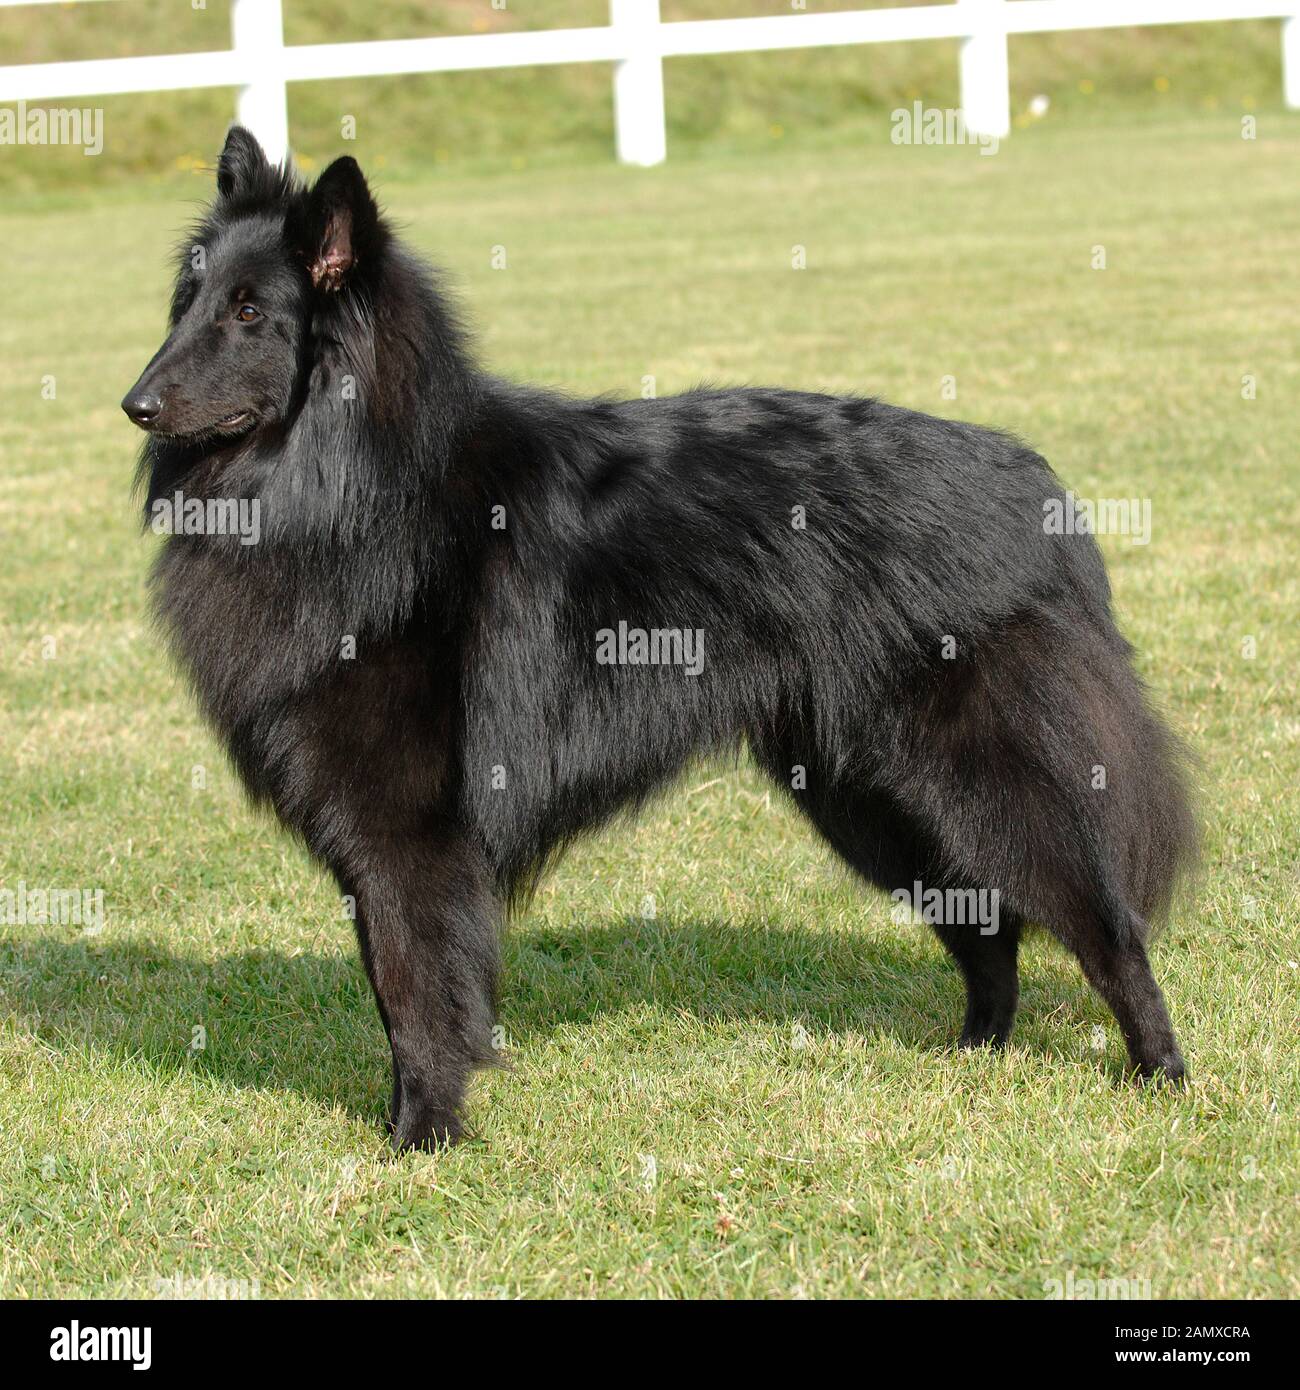 belgian shepherd dog Stock Photo